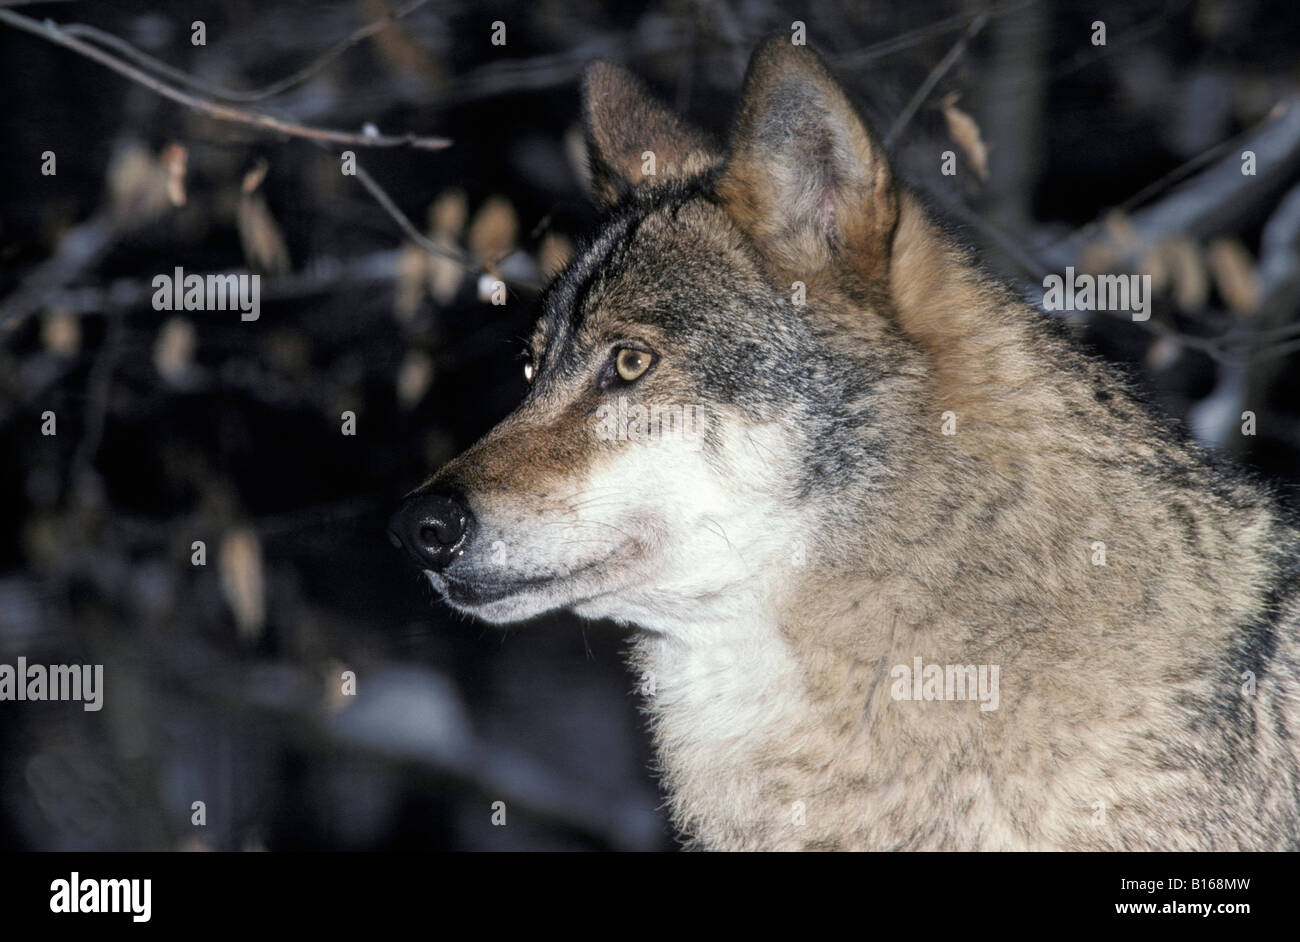 GRAUER WOLF CANIS LUPUS auch bekannt als TIMBER WOLF PORTRAIT Tier Canidae Caniden Canis Canis Lupus Carnivora Fleischfresser Auto Stockfoto